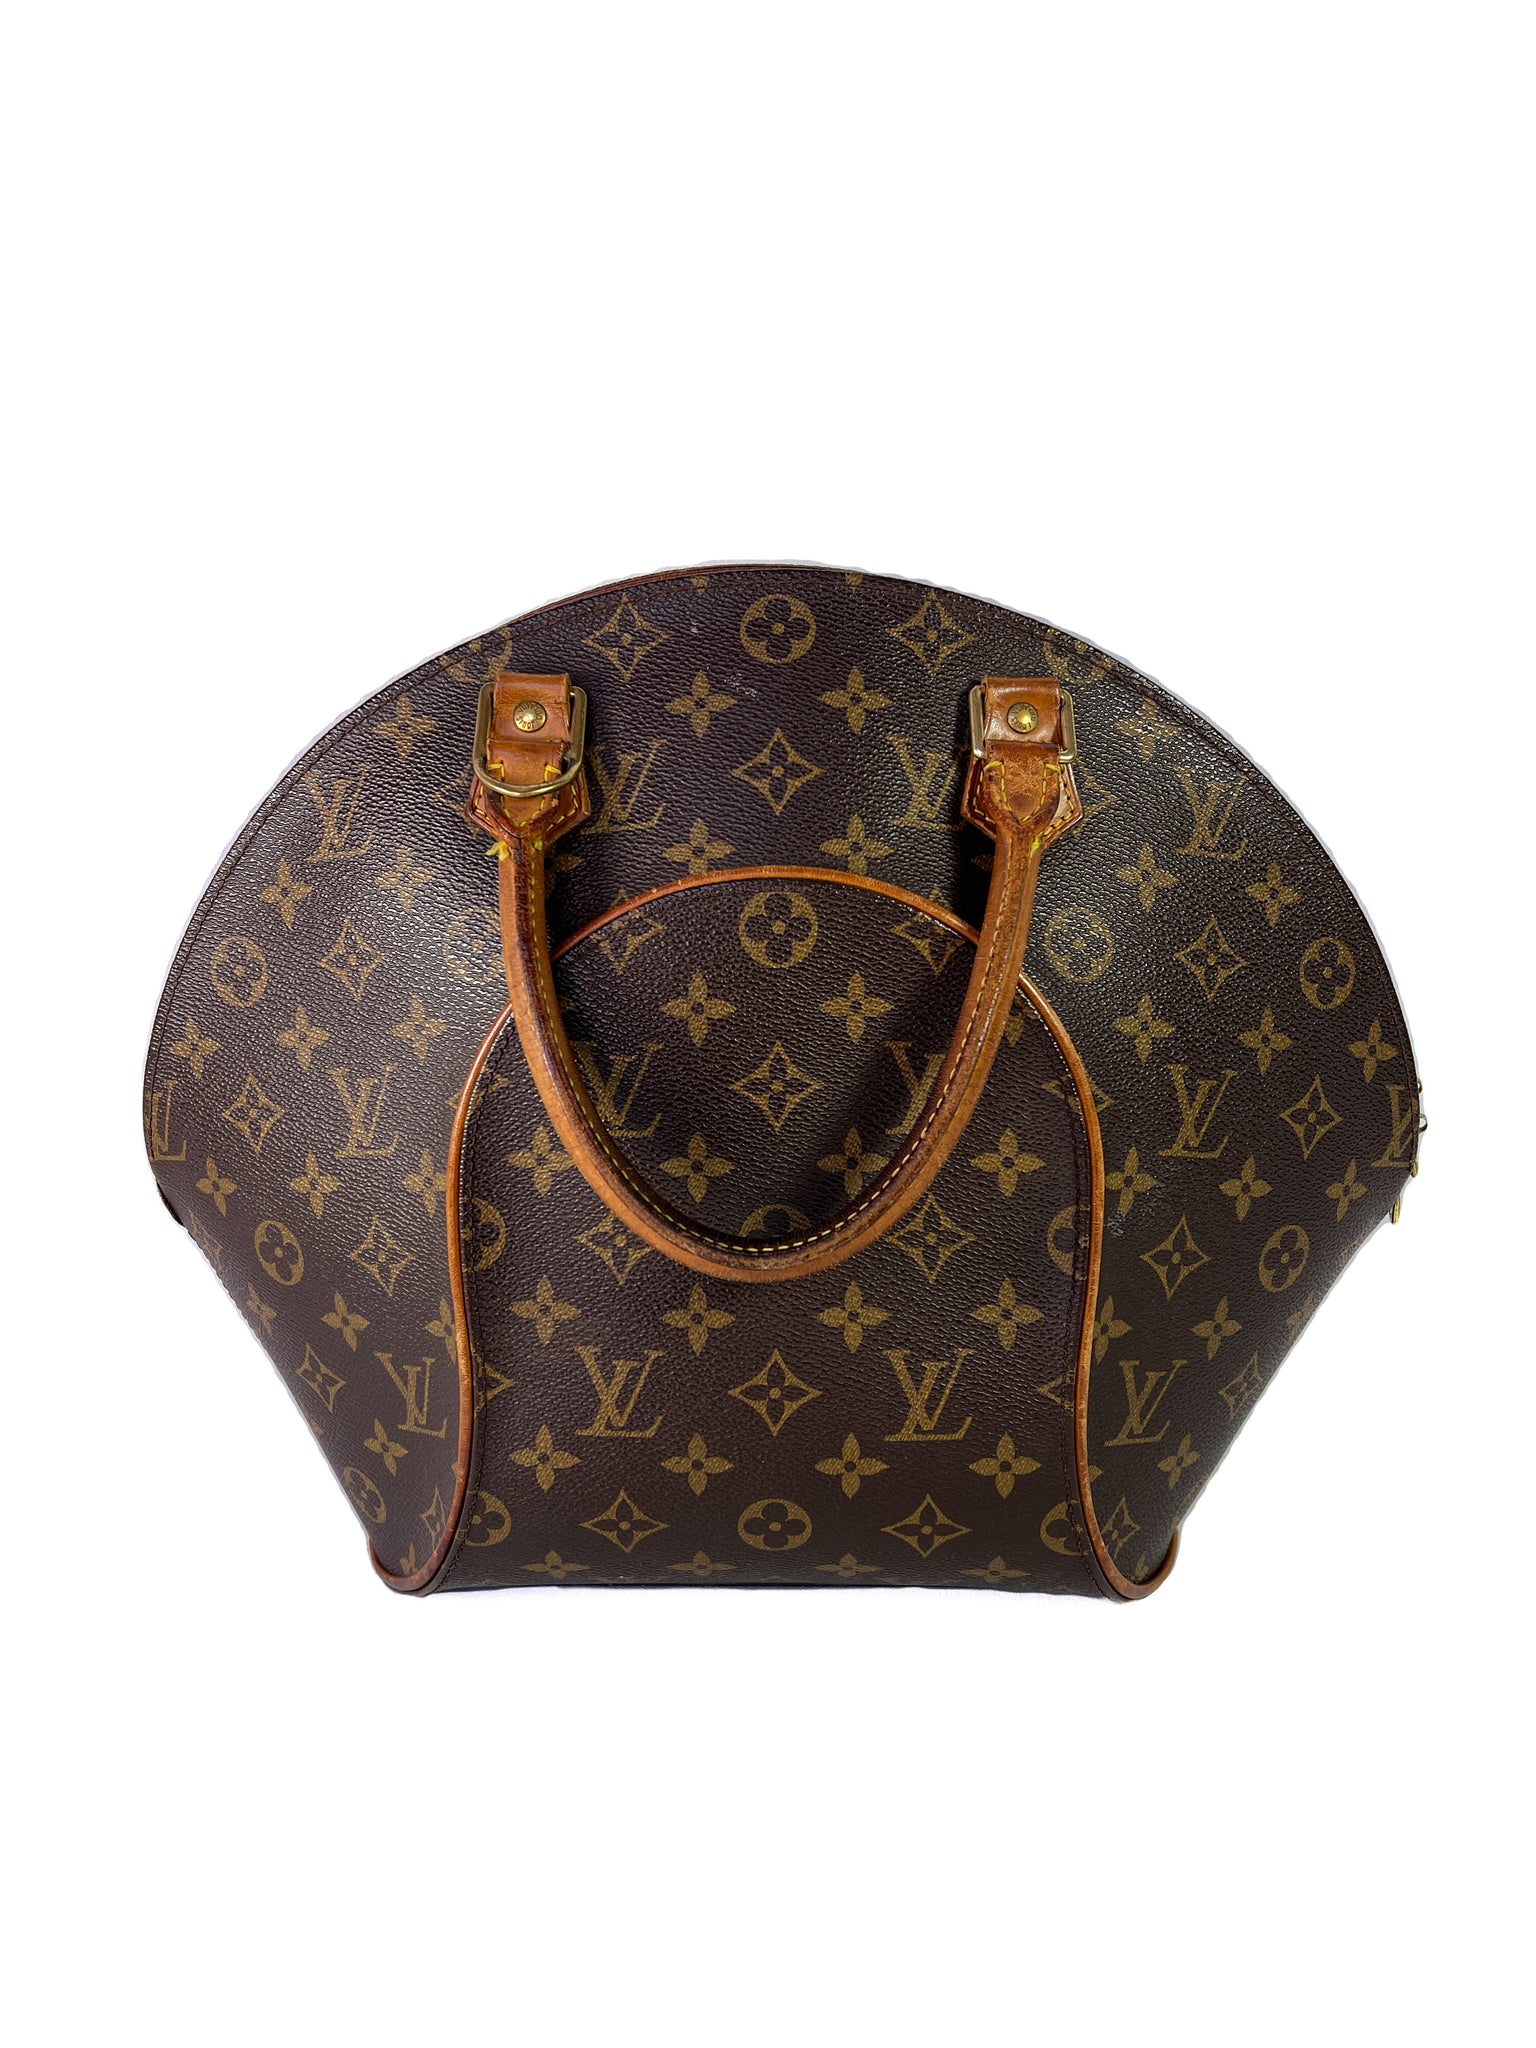 Vintage Louis Vuitton Alma MM handbag, top handle, 1998